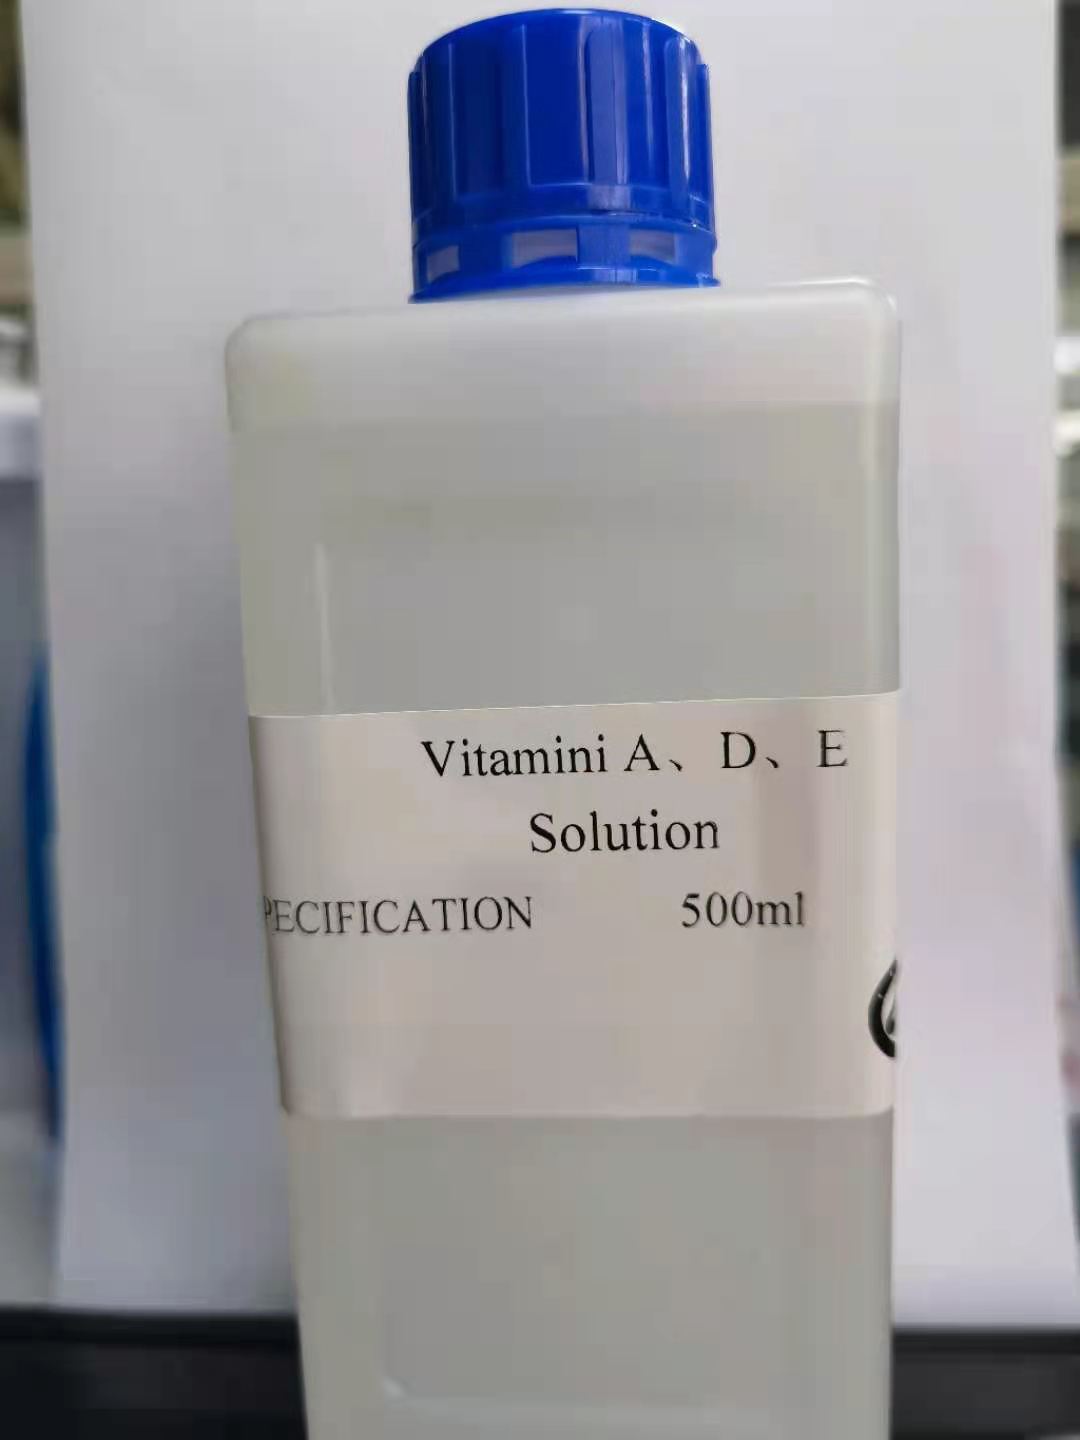 Vitamini A、D、E Solution (1).jpg